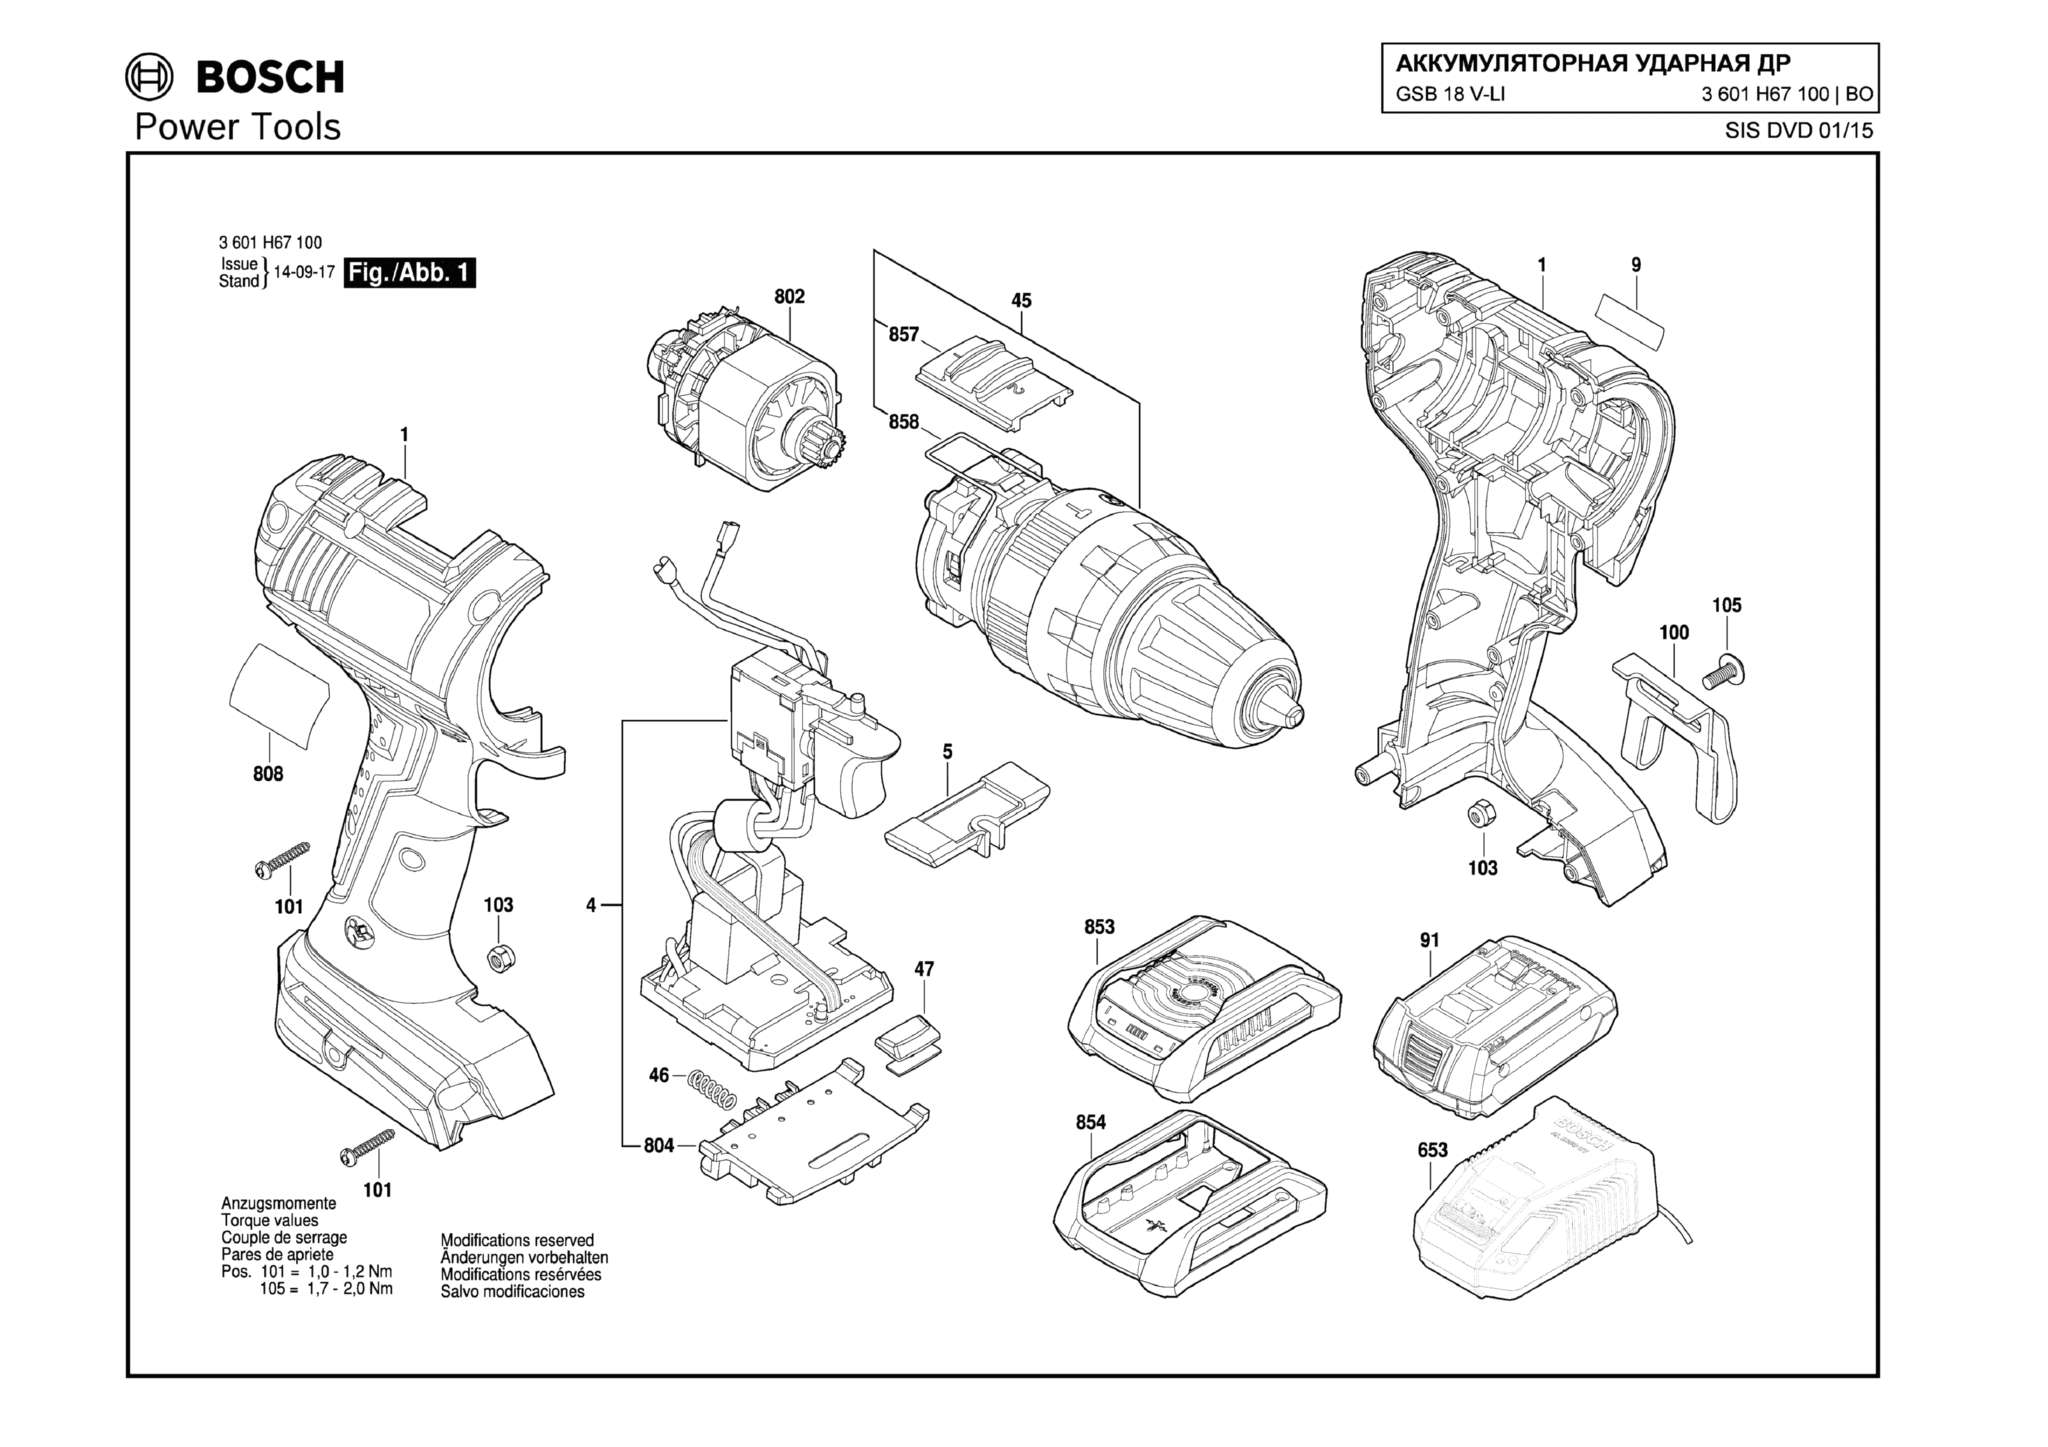 Запчасти, схема и деталировка Bosch GSB 18 V-LI (ТИП 3601H67100)